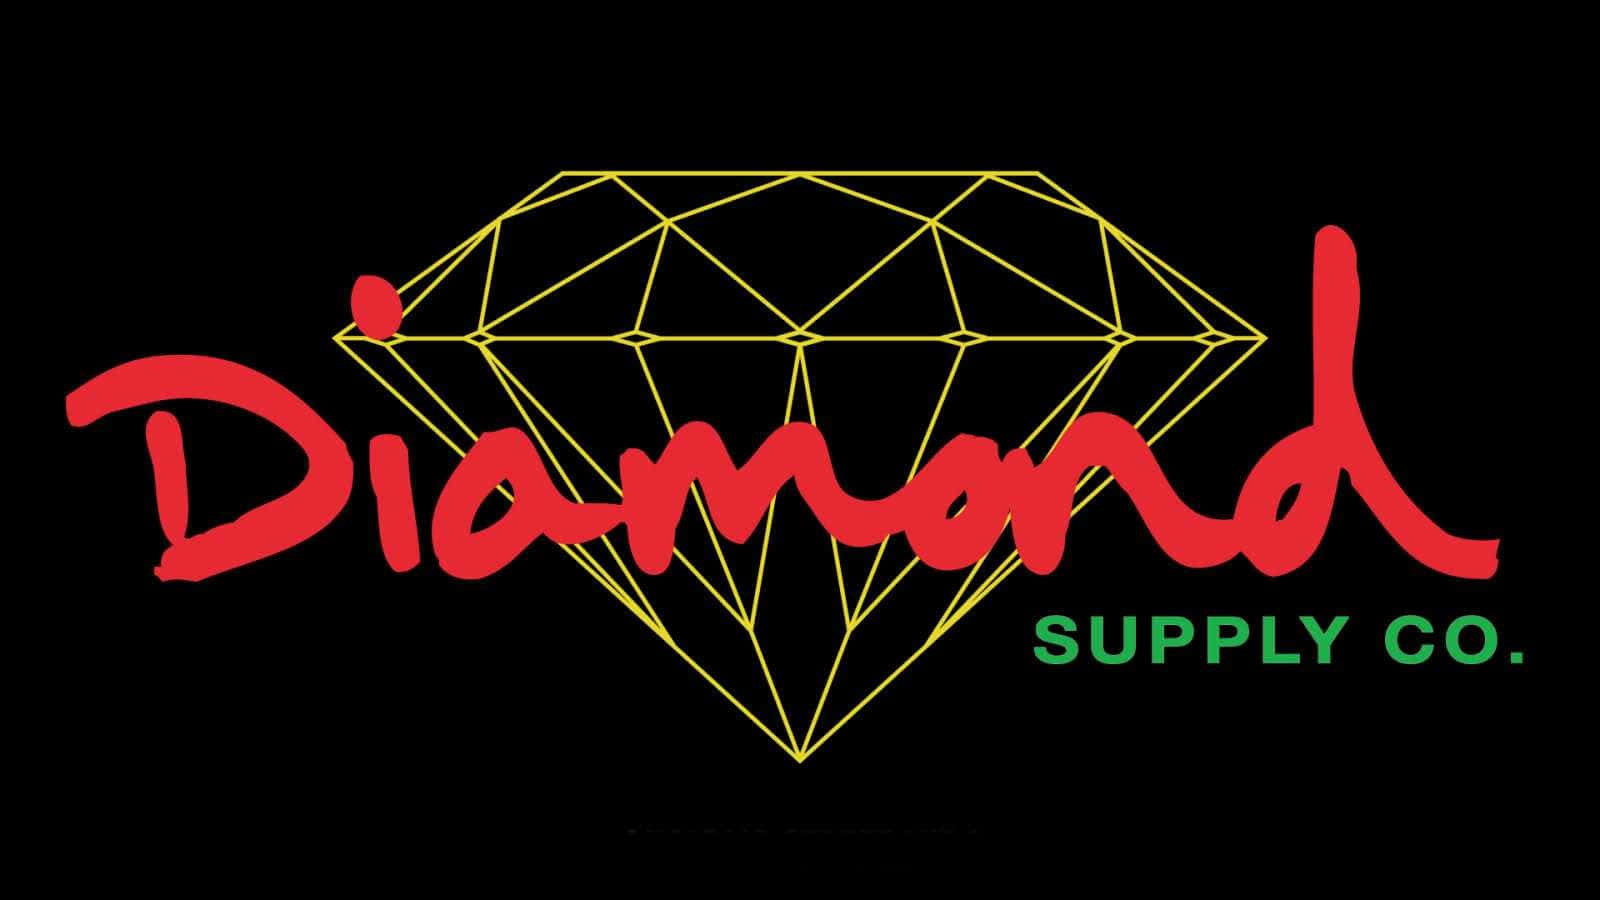 Logotipodiamond Supply Co. Com Marca De Palavra Vermelha. Papel de Parede